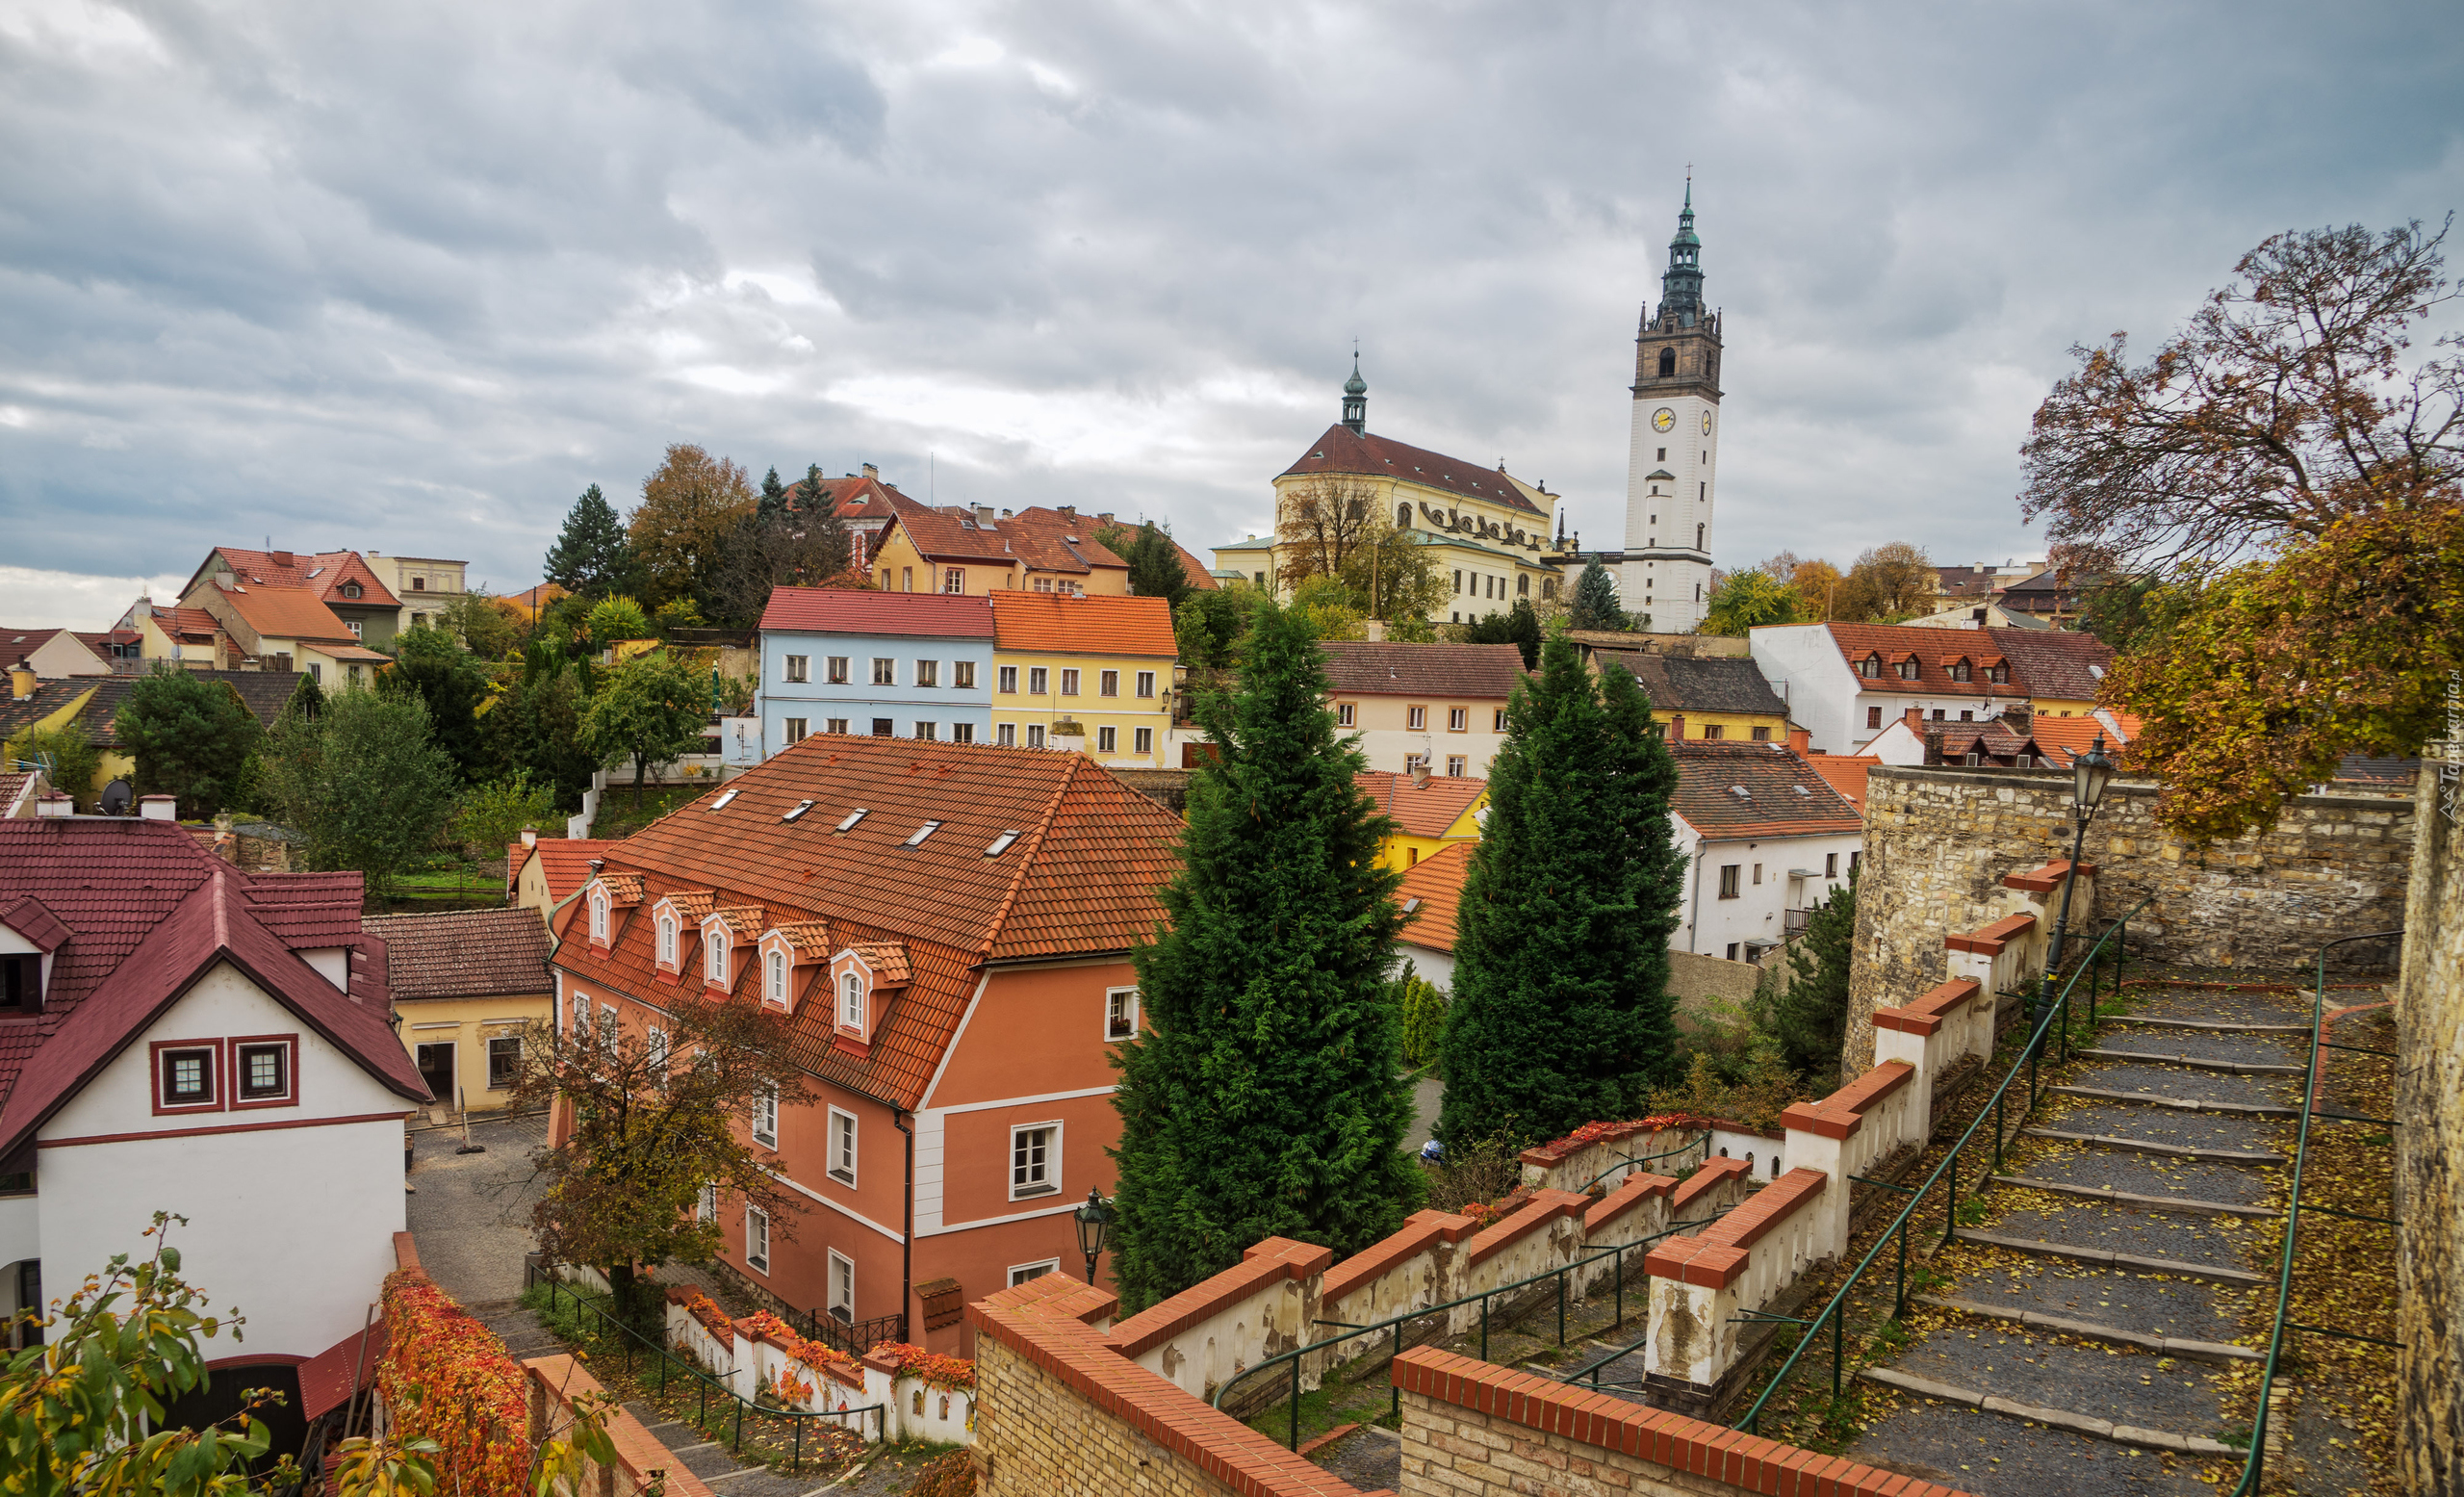 Czechy, Litomierzyce, Katedra św. Szczepana, Domy